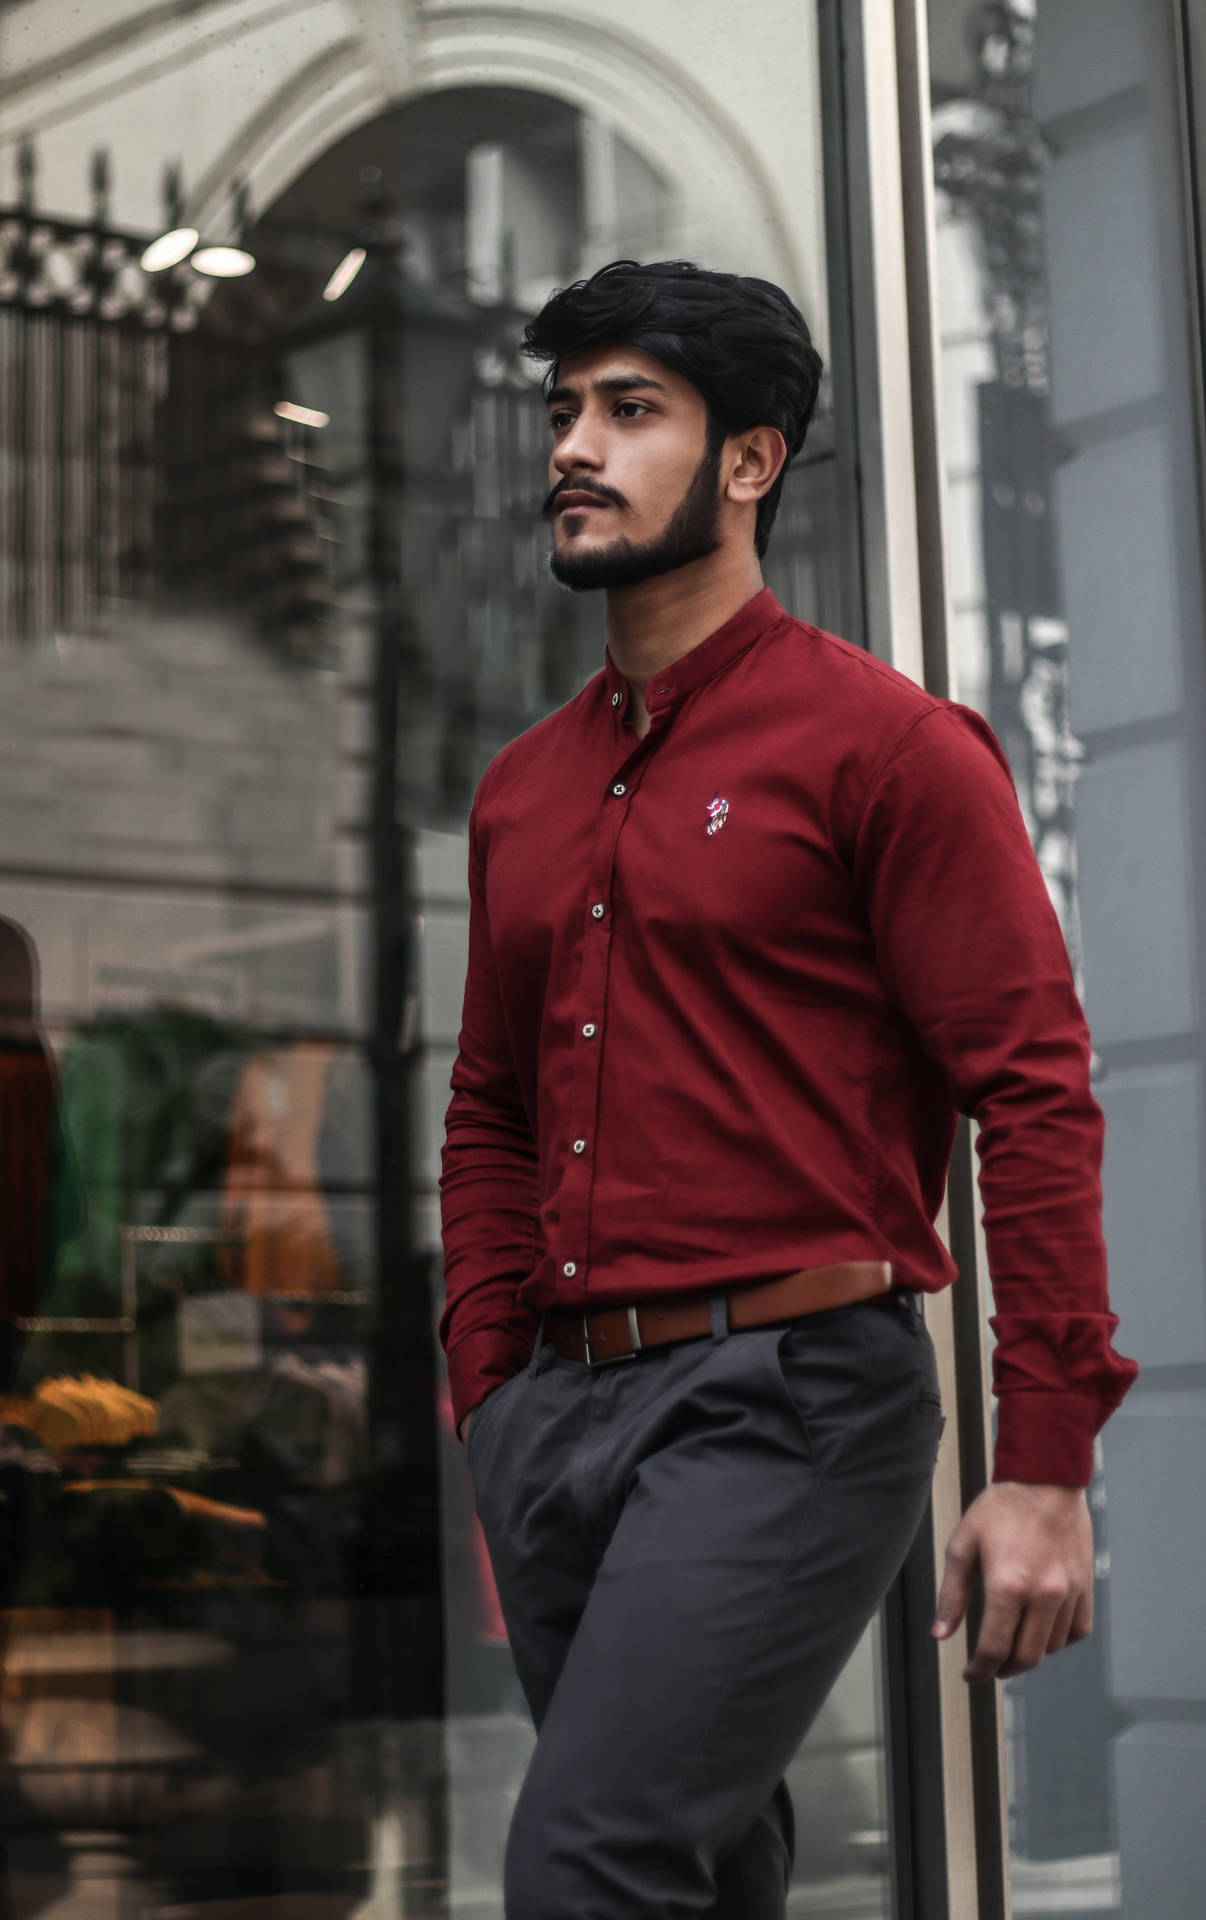 Manligmodell I Röd Skjorta. Wallpaper